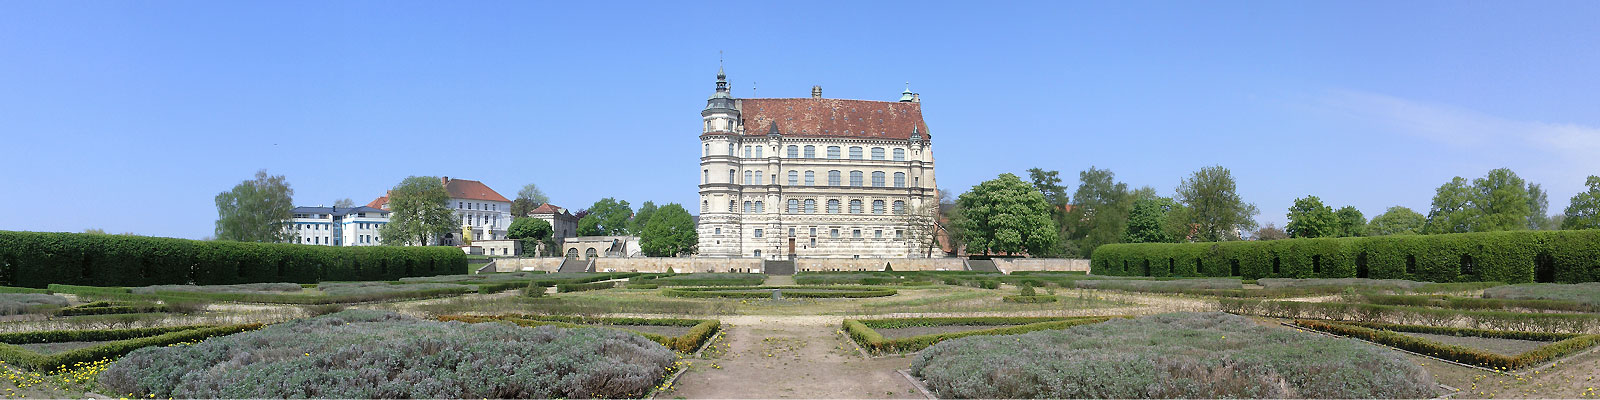 Panorama-Motiv: Güstrow Schloss - Motivnummer: see-gue-01